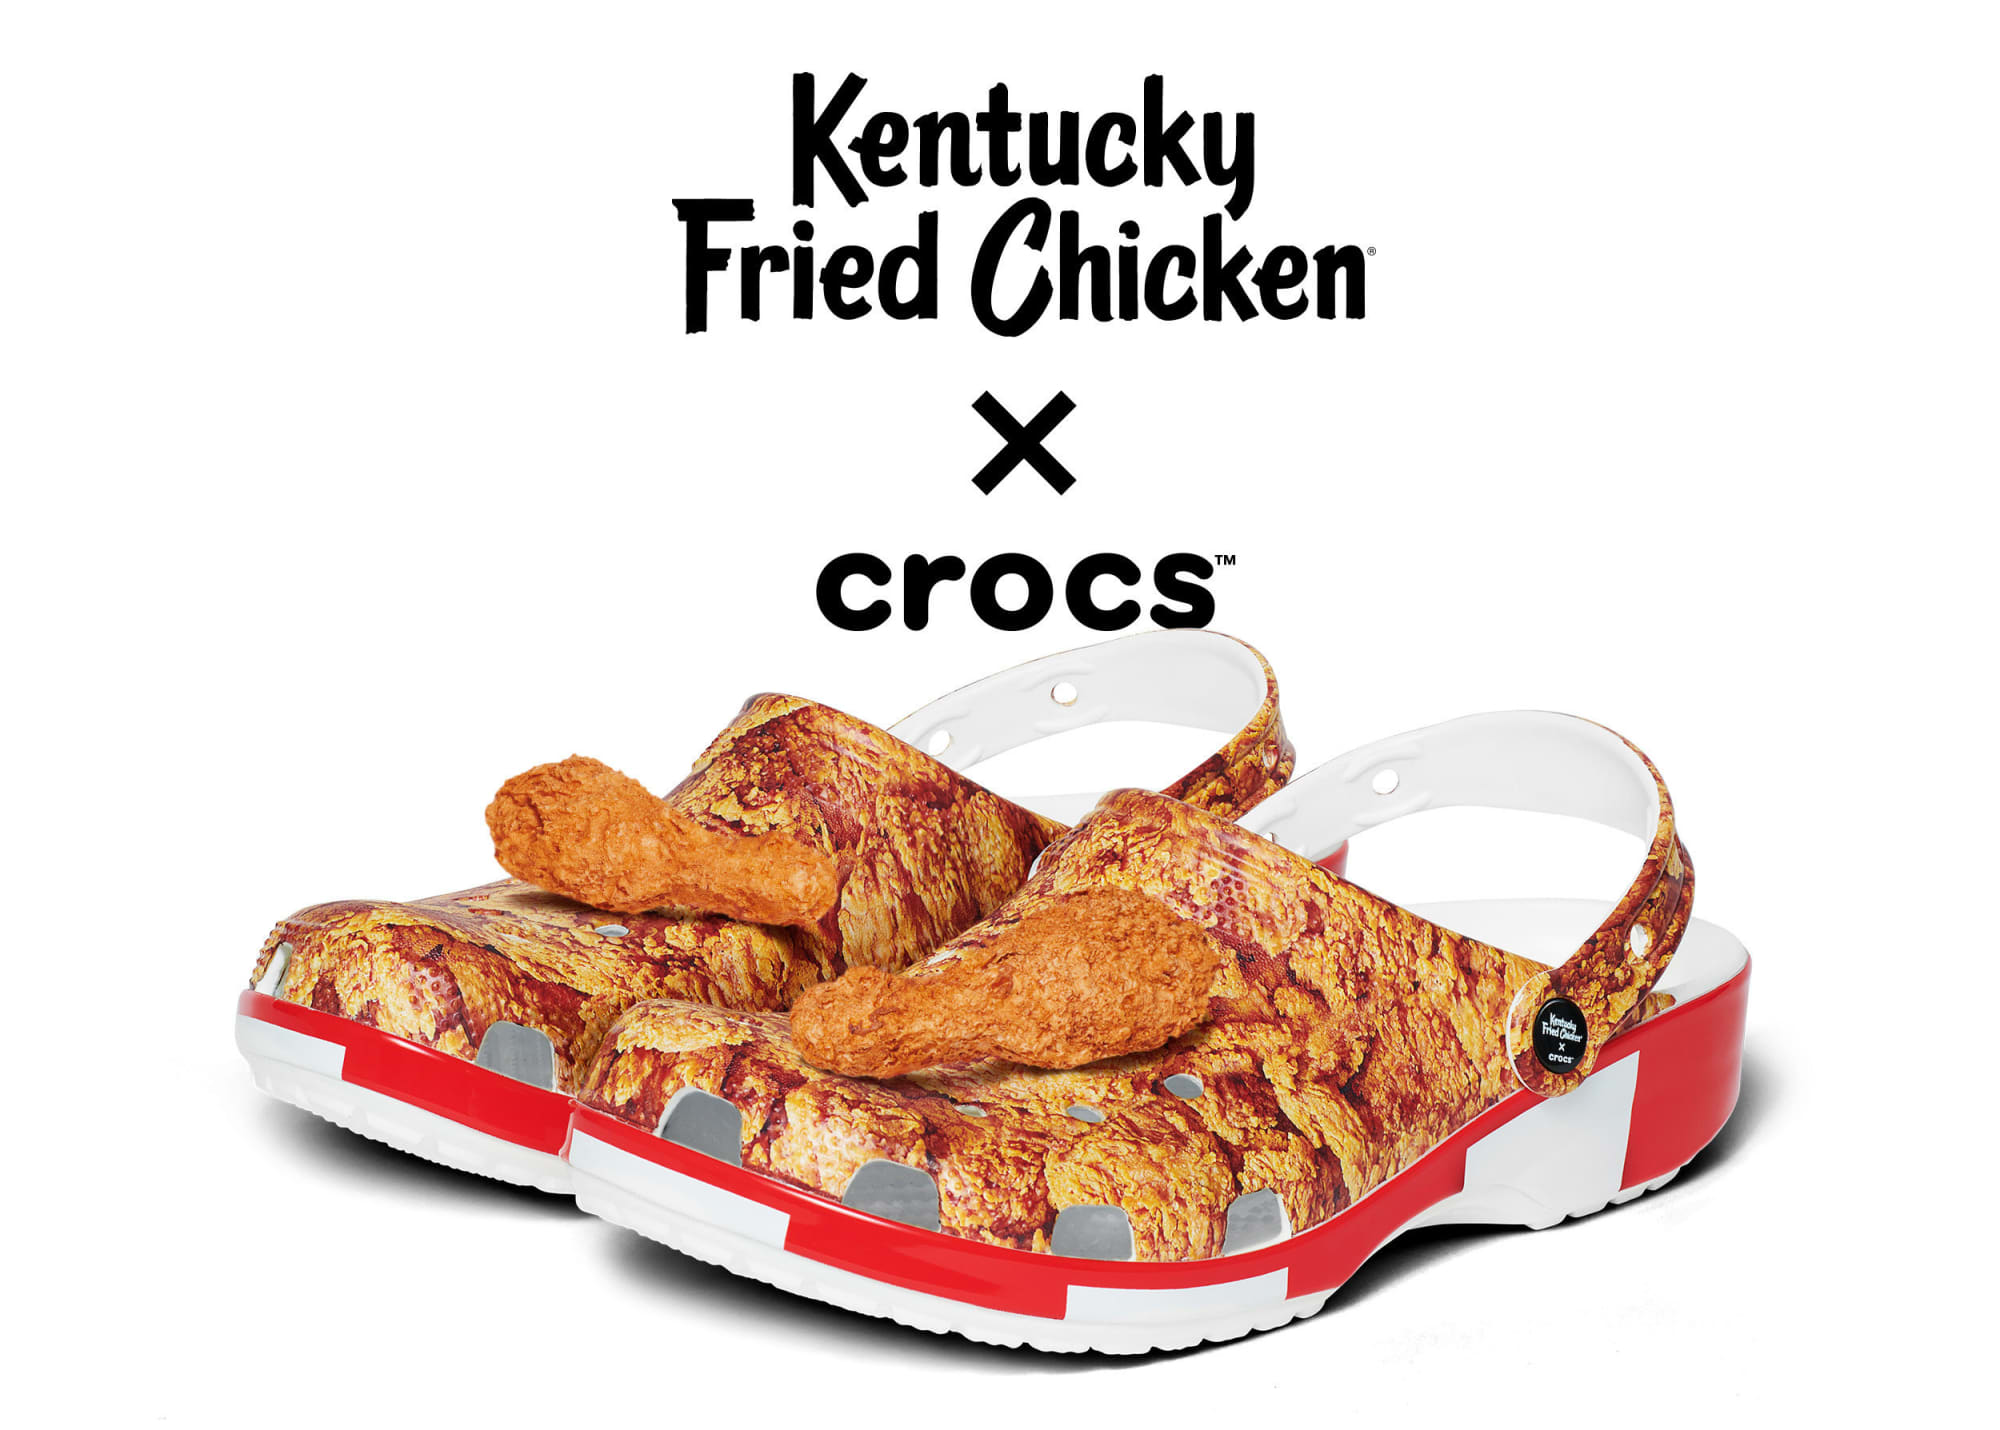 kfc crocs buy